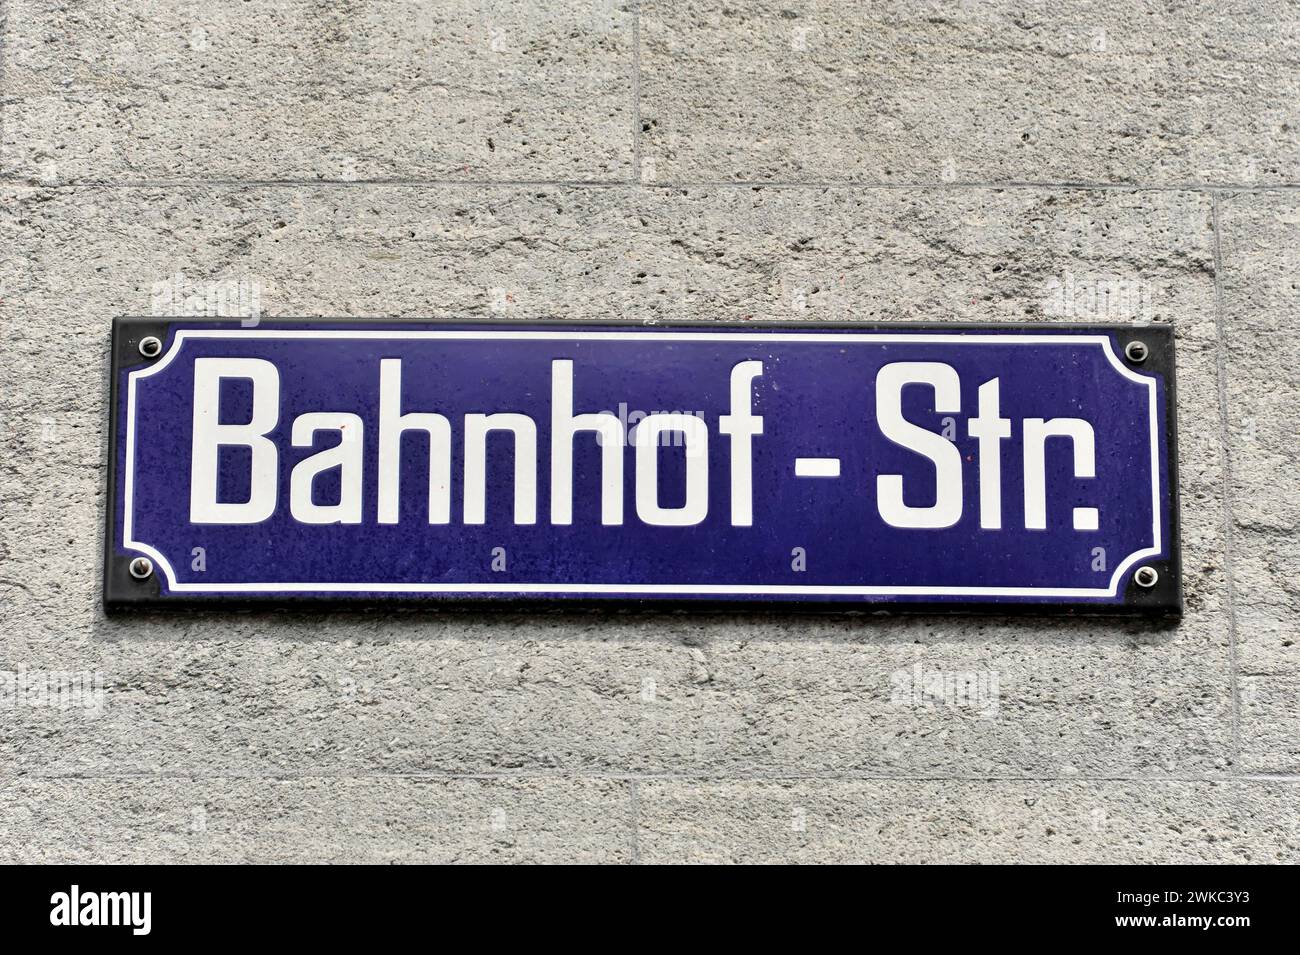 Street sign Bahnhof-Str. City of Zurich, Switzerland Stock Photo